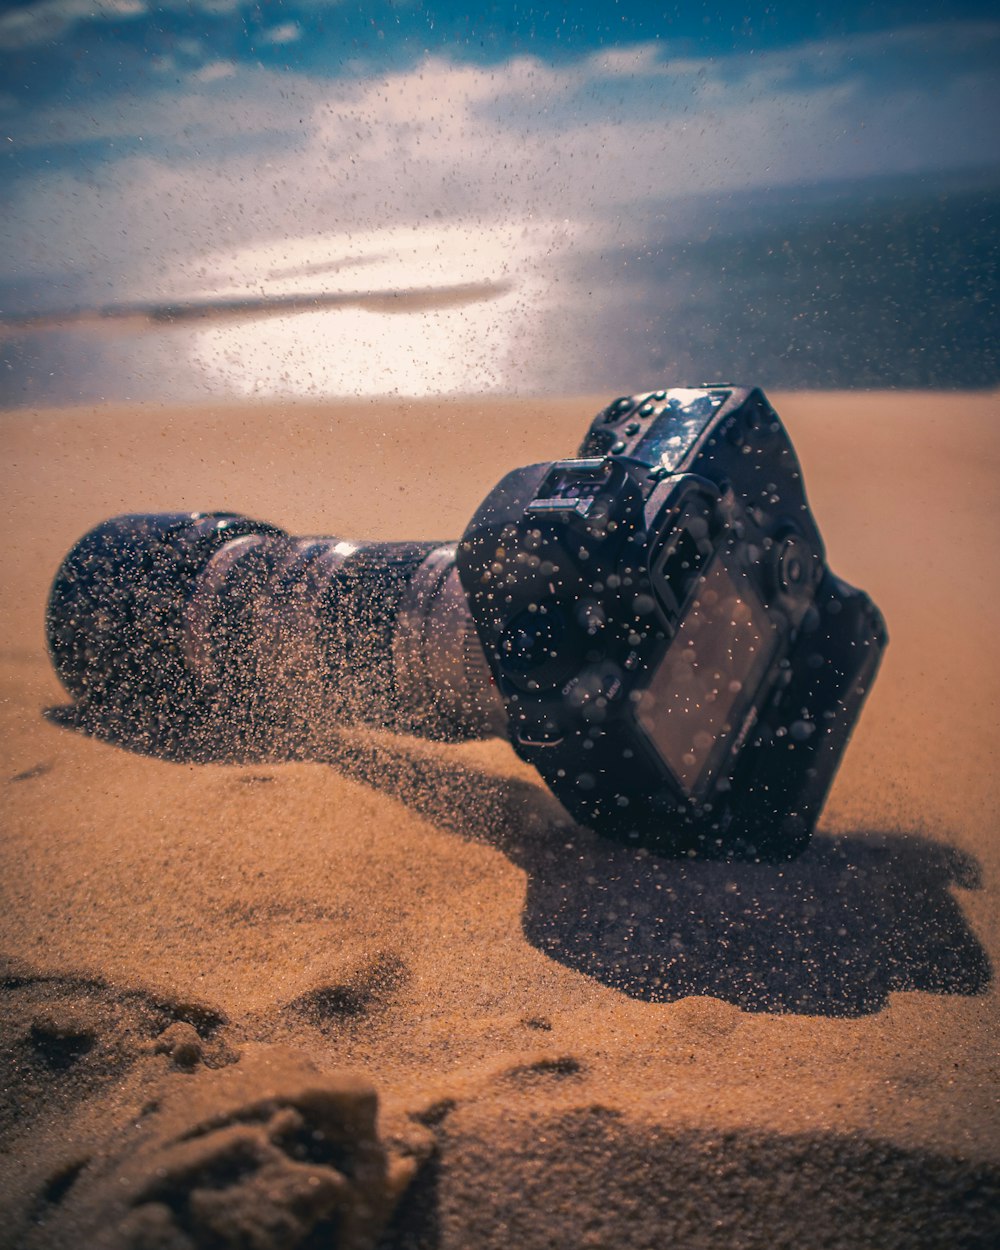 black DSLR camera on sand